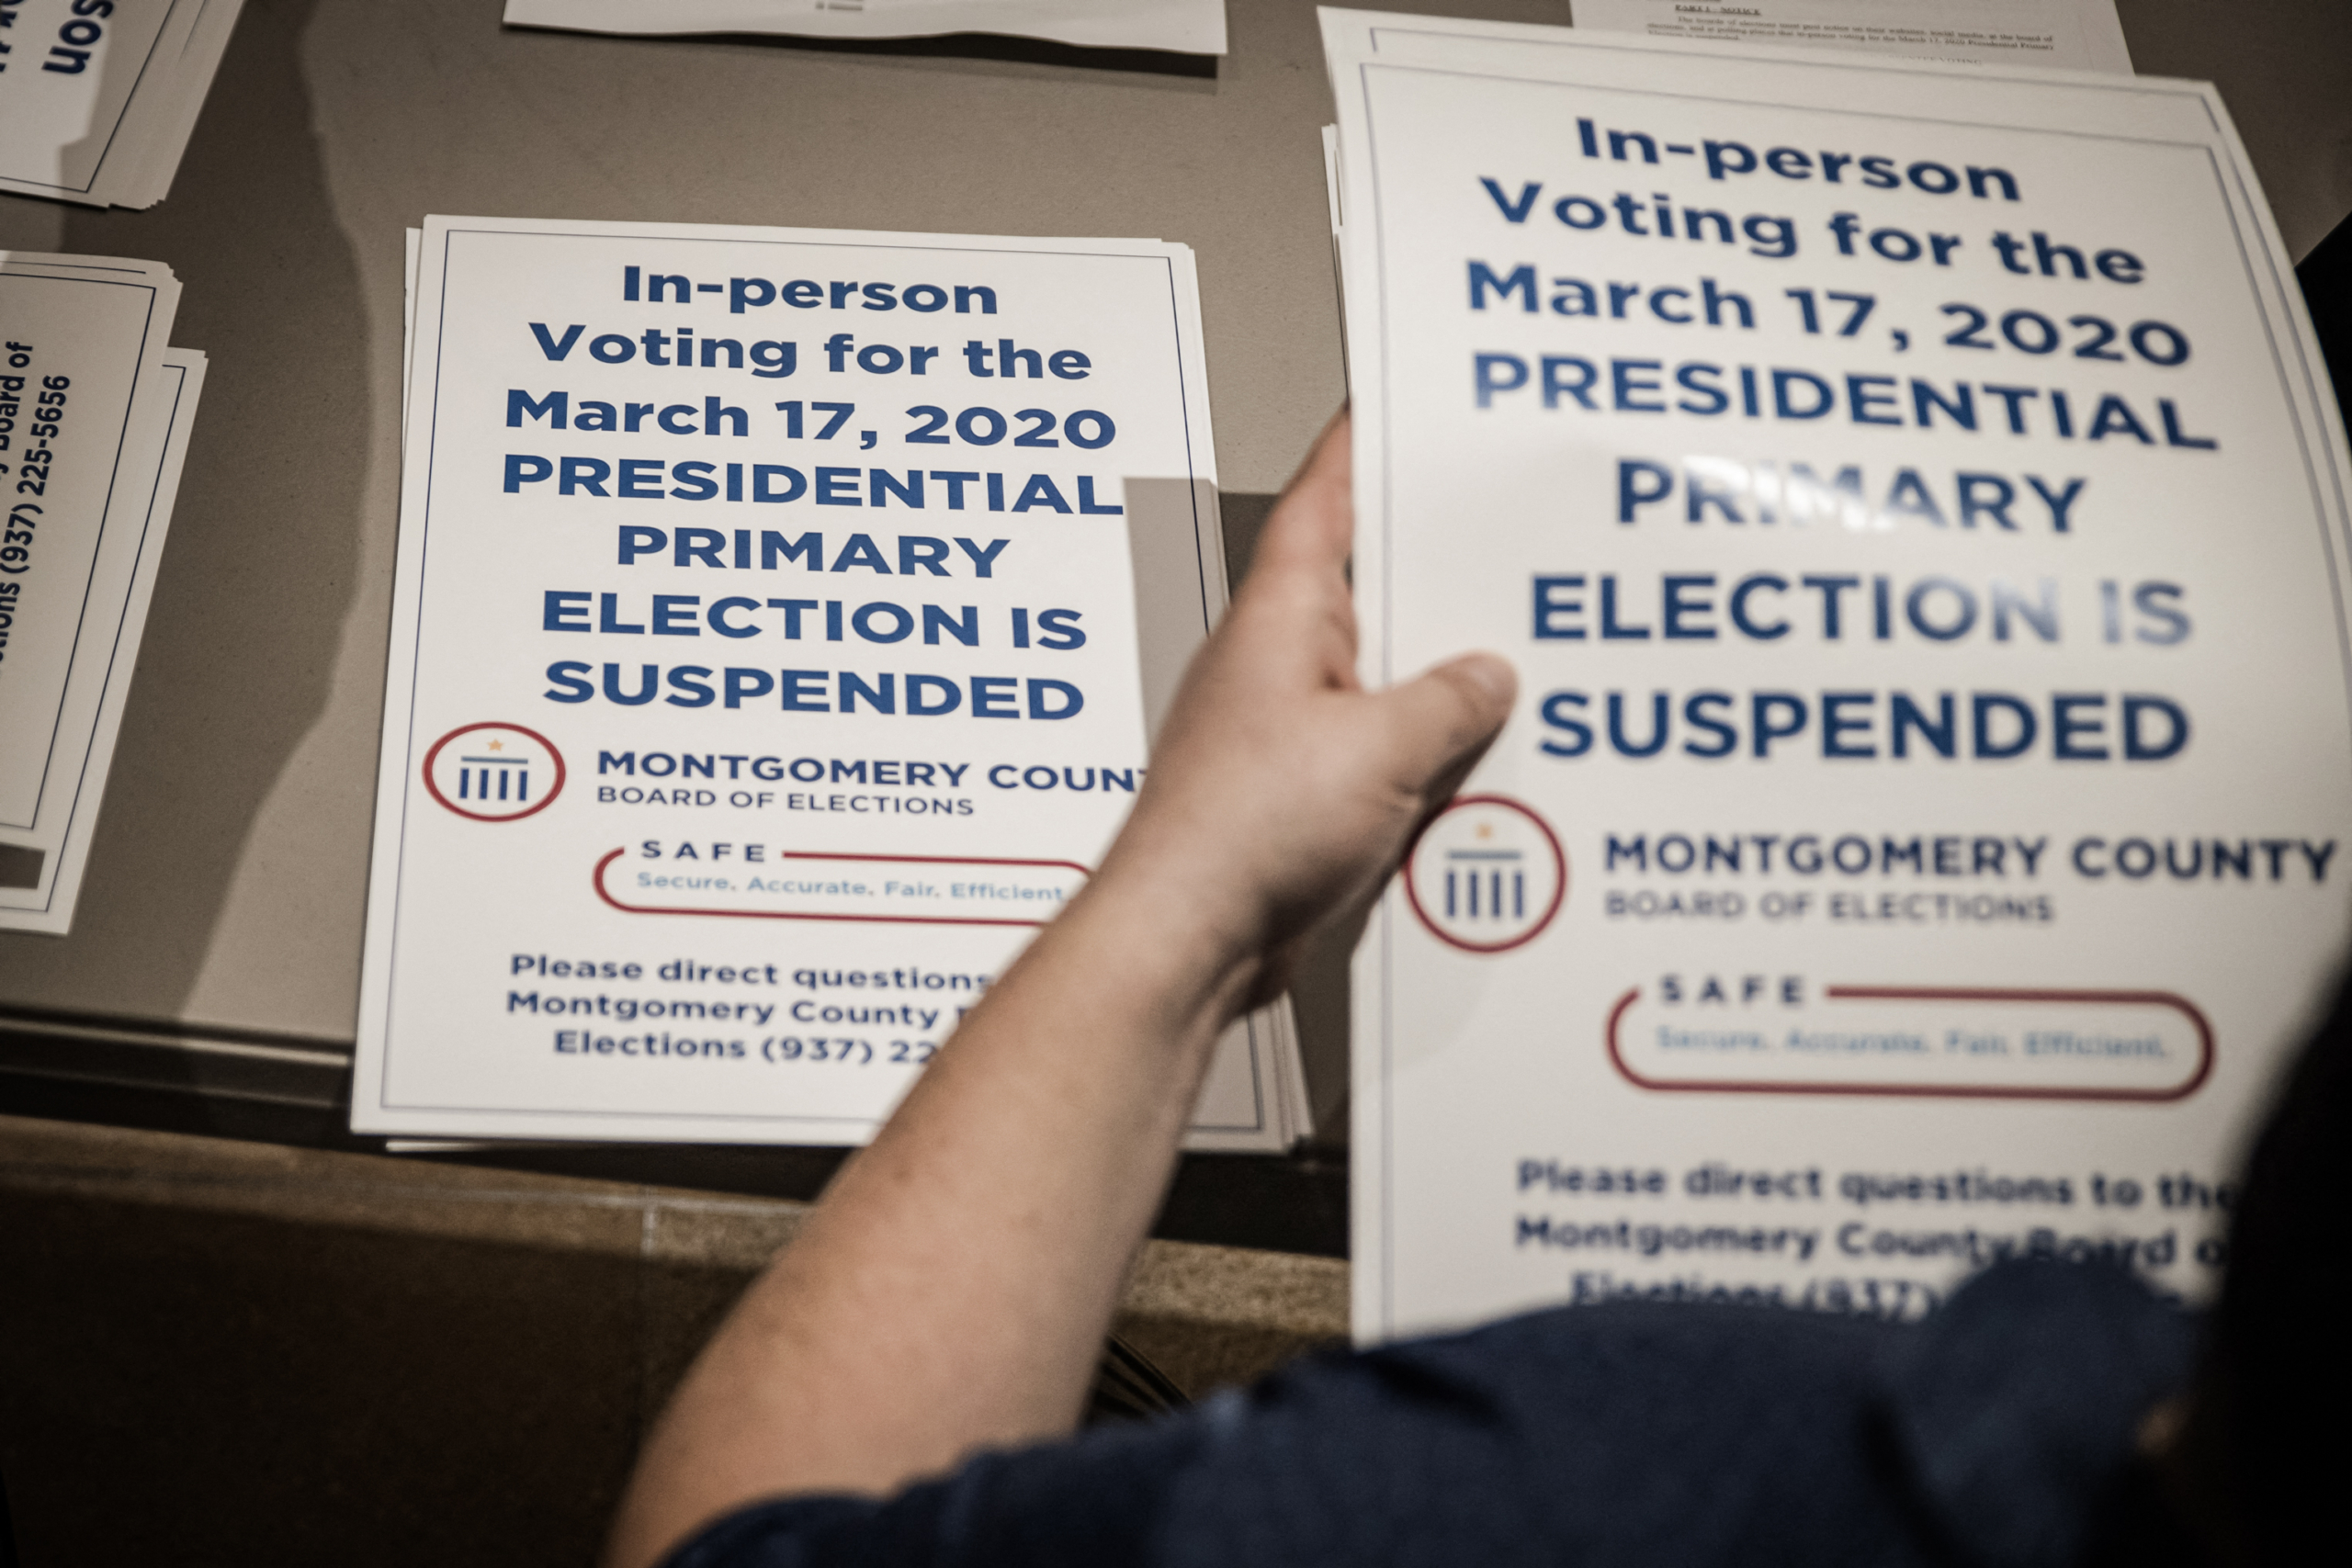 Các nhân viên bầu cử của quận phát các biển hiệu “tạm dừng bầu cử” để dán tại các điểm bỏ phiếu sau khi cuộc bầu cử sơ bộ bị hủy bỏ, ở Dayton, Ohio, vào ngày 17/03/2020. (Ảnh: Megan Jelinger/AFP qua Getty Images)